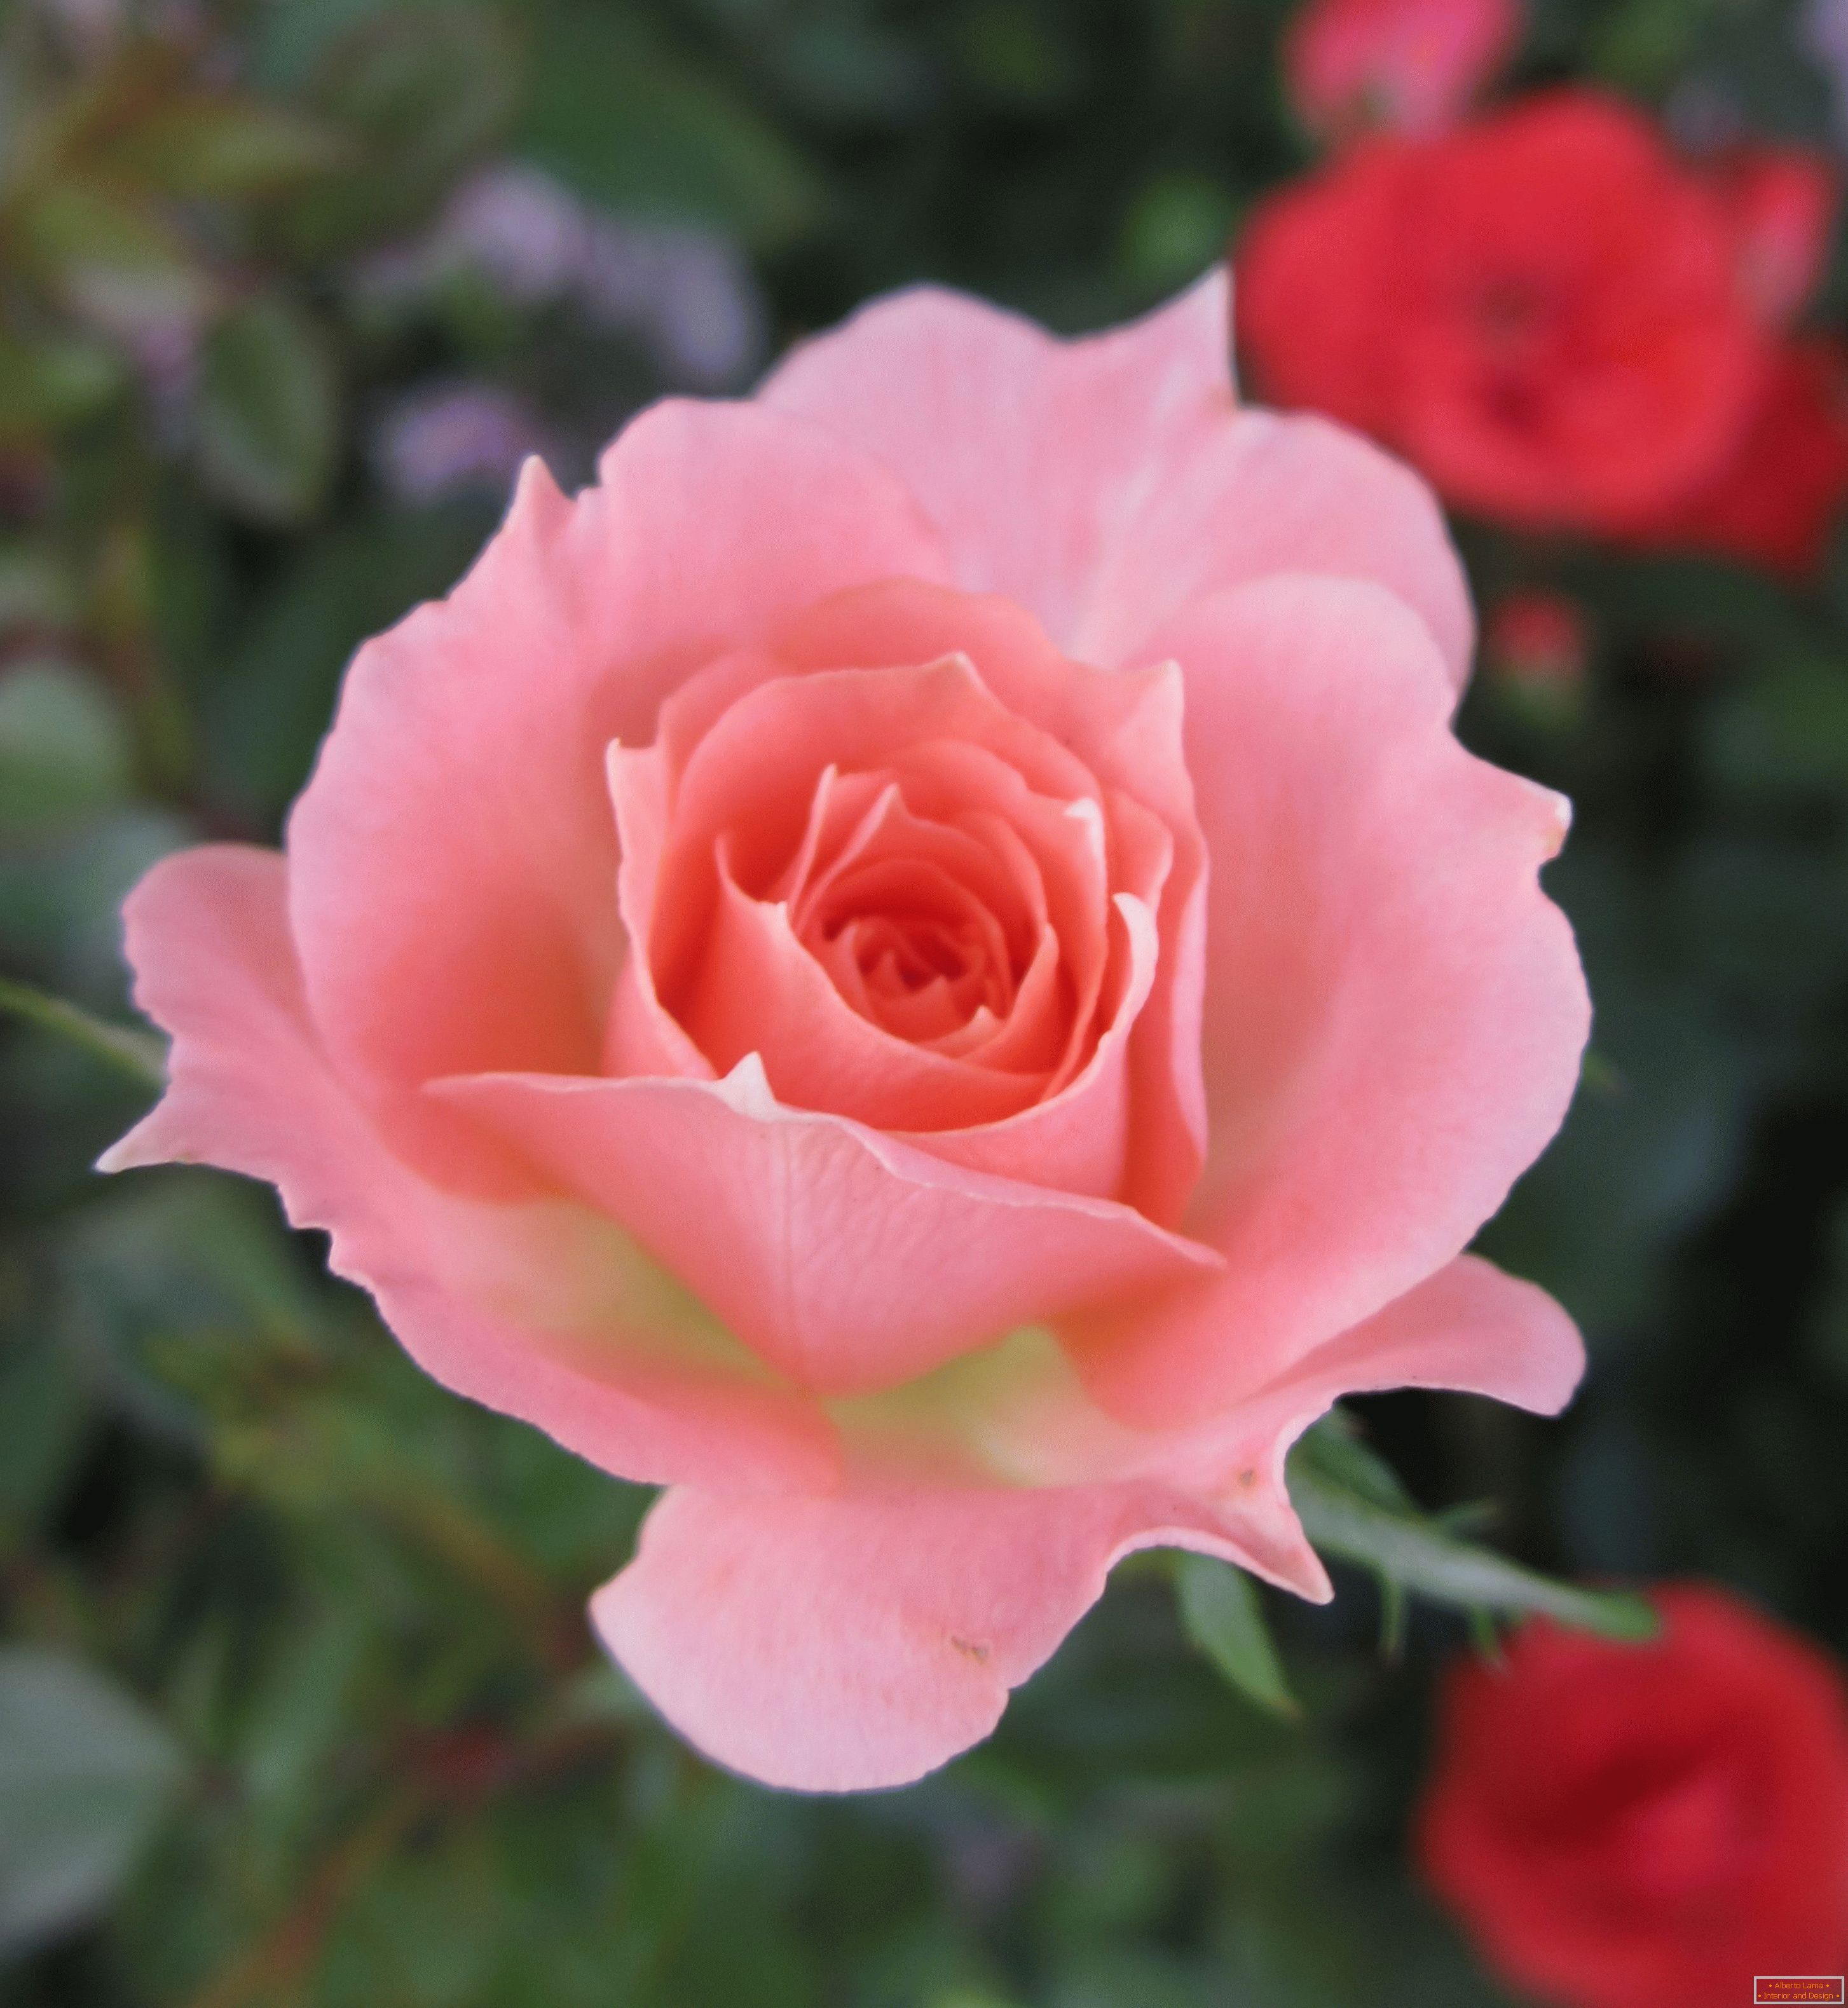 Ruža s ružovým odtieňom v prostredí červených kvetov